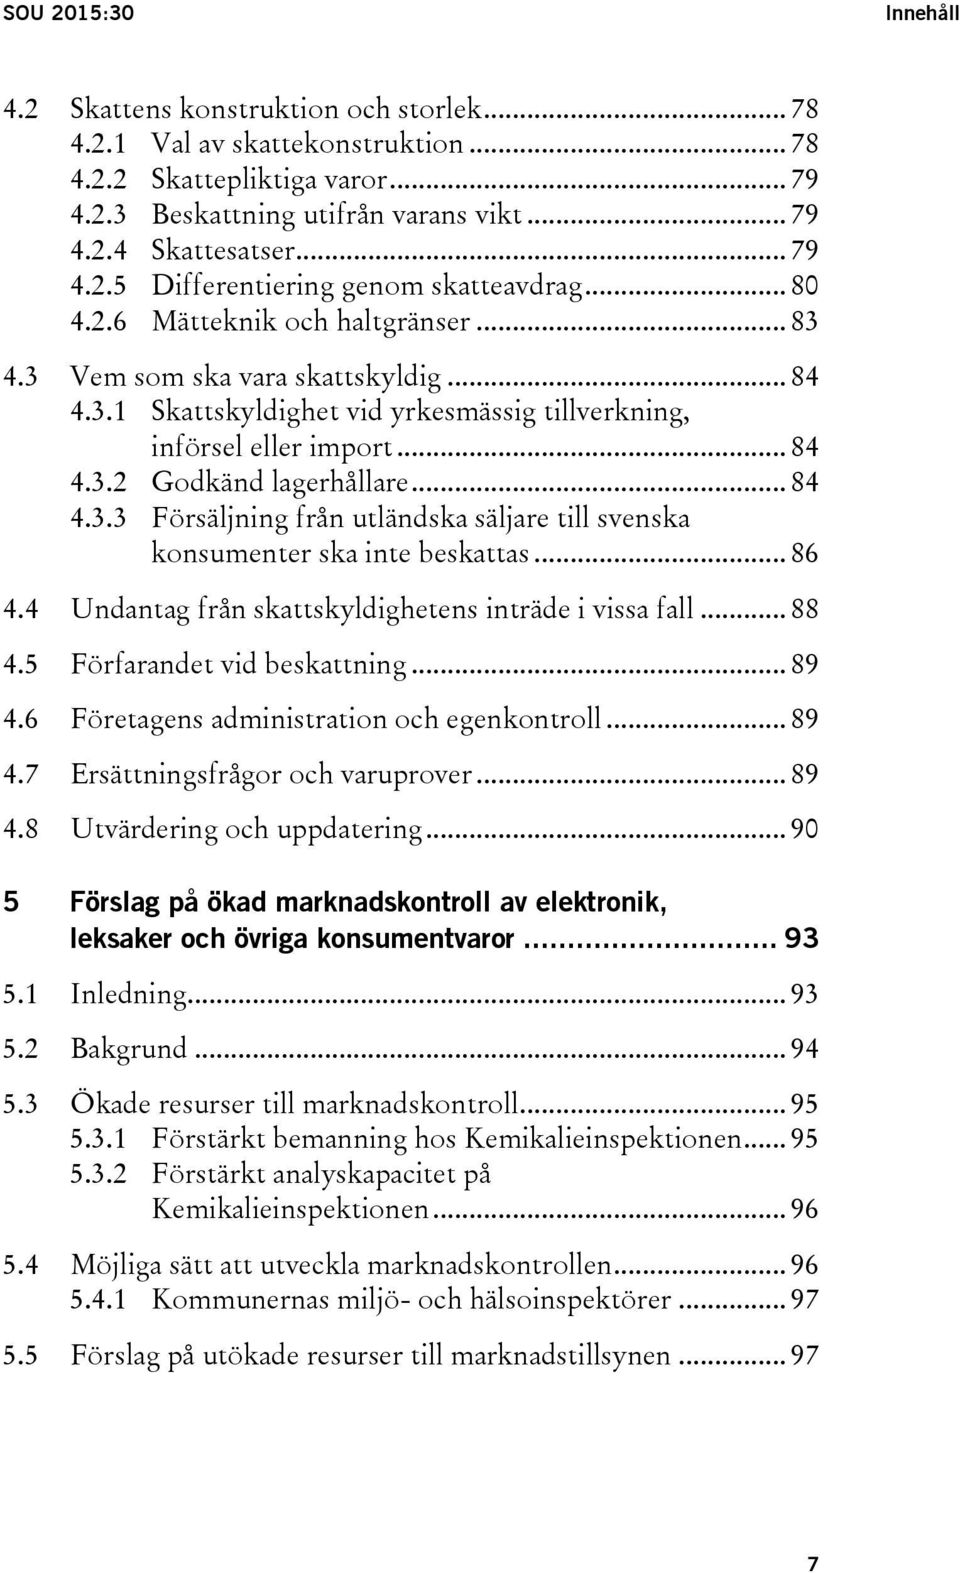 .. 84 4.3.2 Godkänd lagerhållare... 84 4.3.3 Försäljning från utländska säljare till svenska konsumenter ska inte beskattas... 86 4.4 Undantag från skattskyldighetens inträde i vissa fall... 88 4.